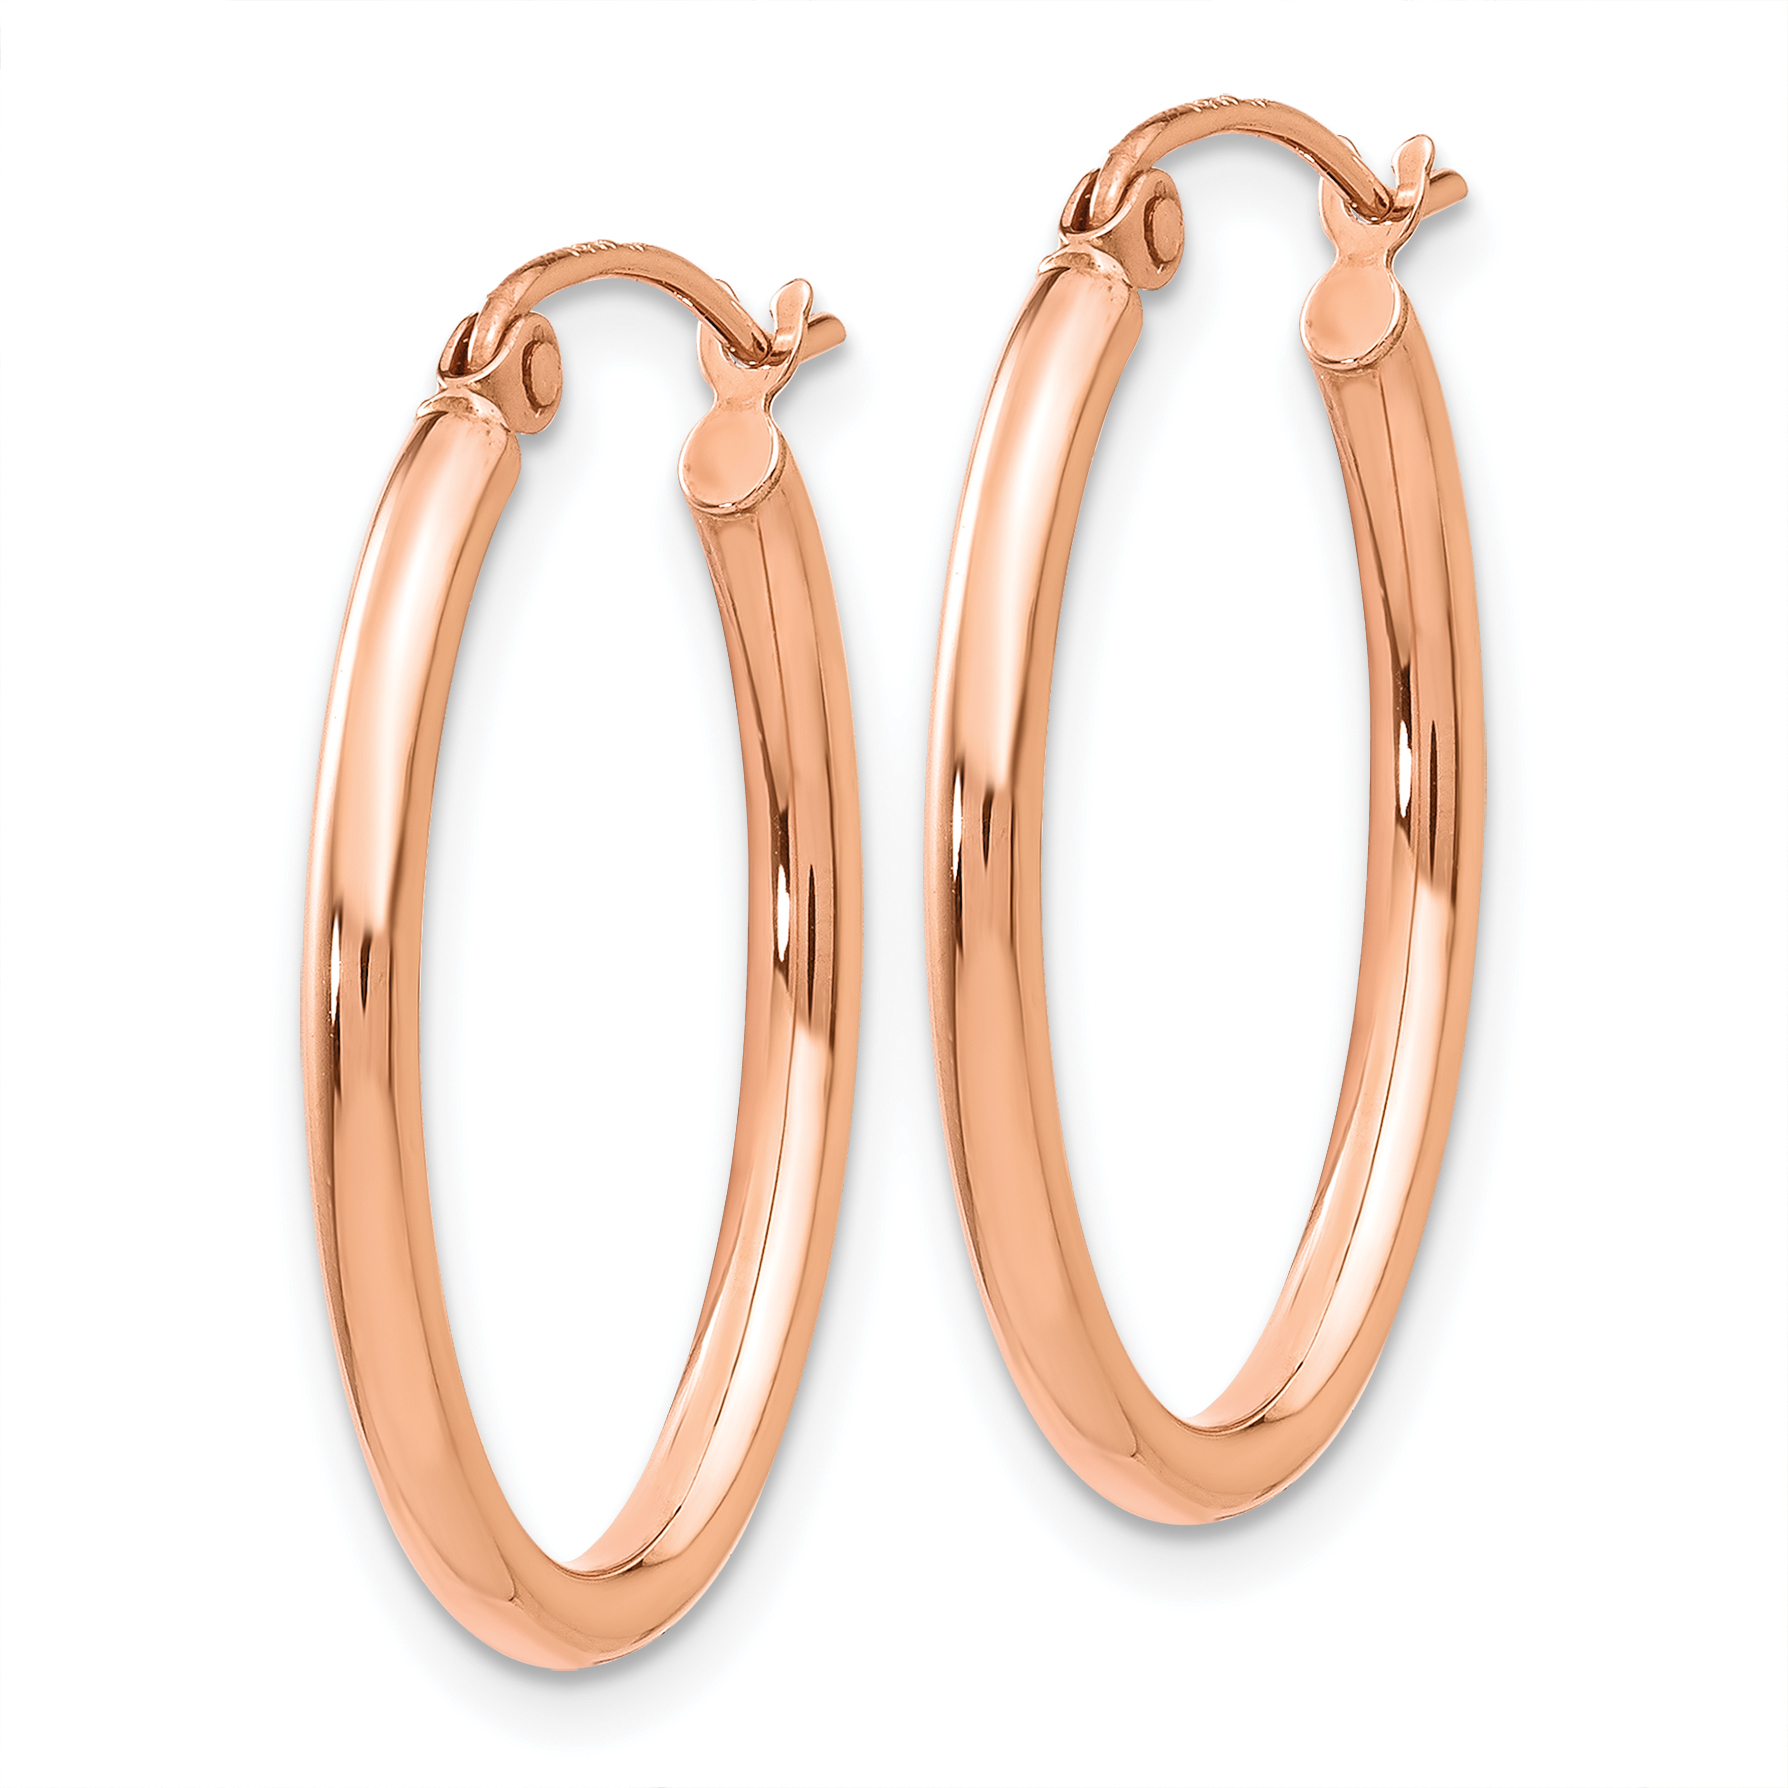 14k Rose Gold Oval Hoop Earrings TF595 886774732237 | eBay